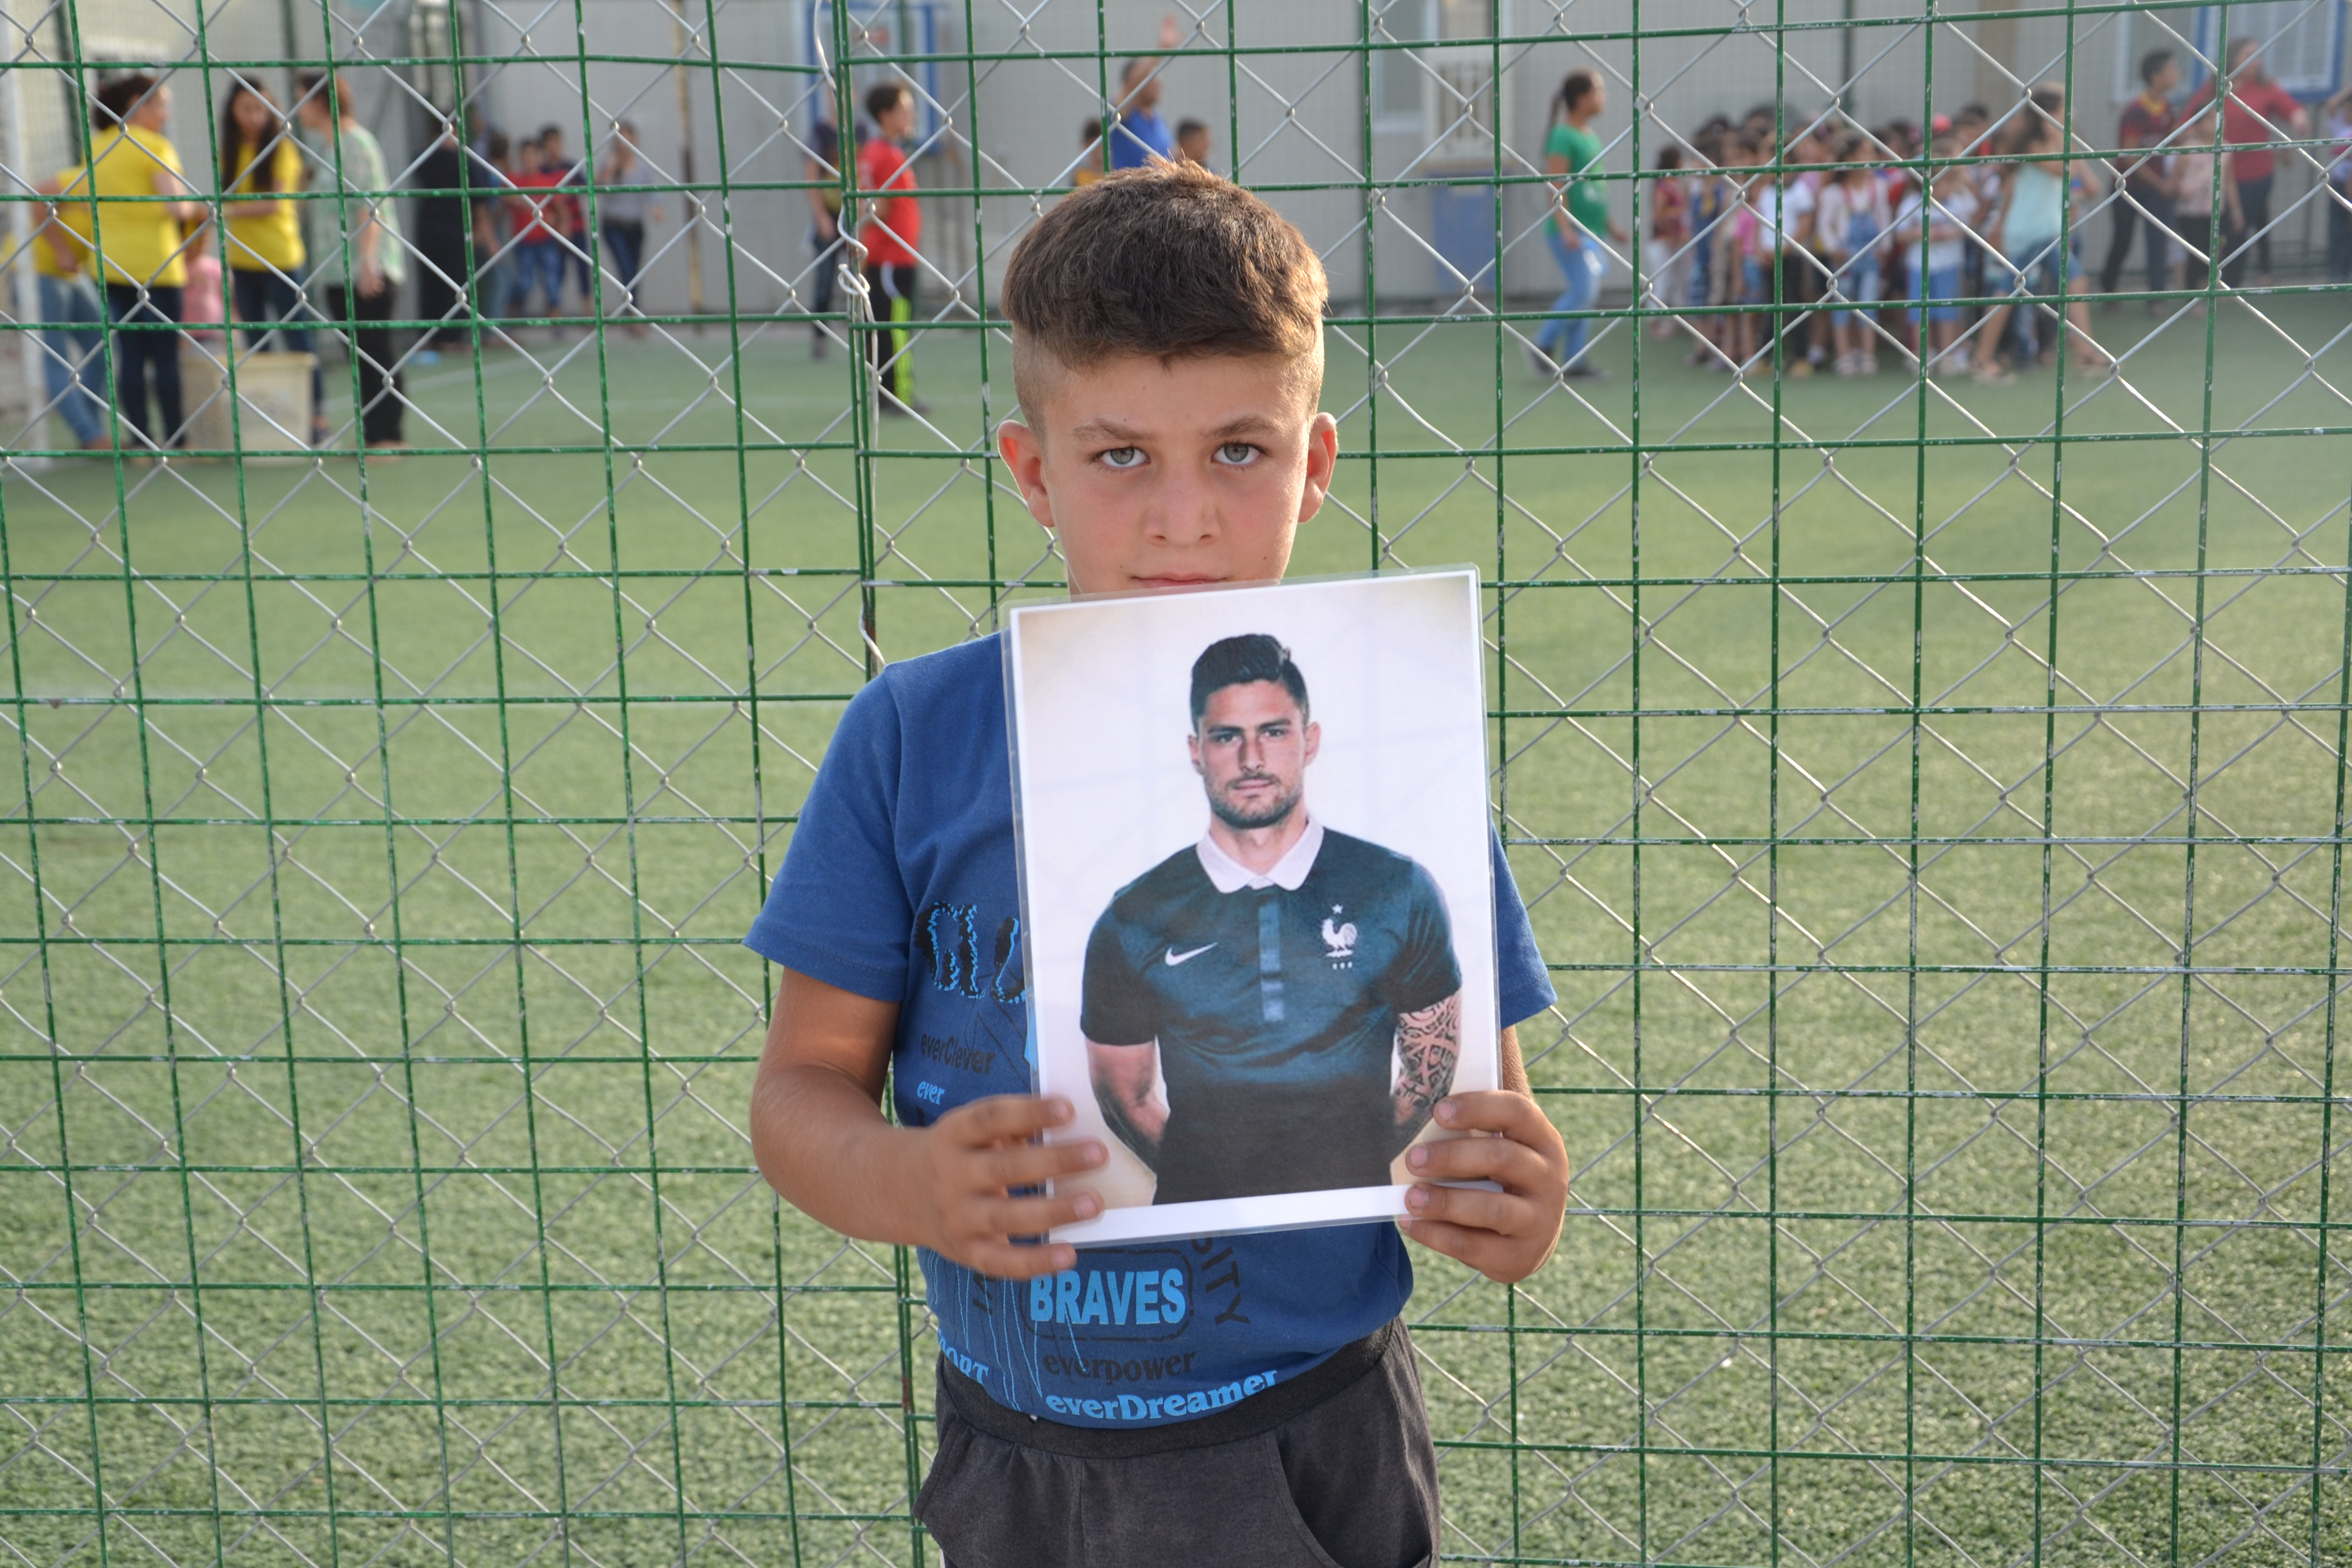 Les enfants chrétiens d'Irak soutiennent Olivier Giroud, attaquant de l’équipe de France de football © SOS Chrétiens d'Orient